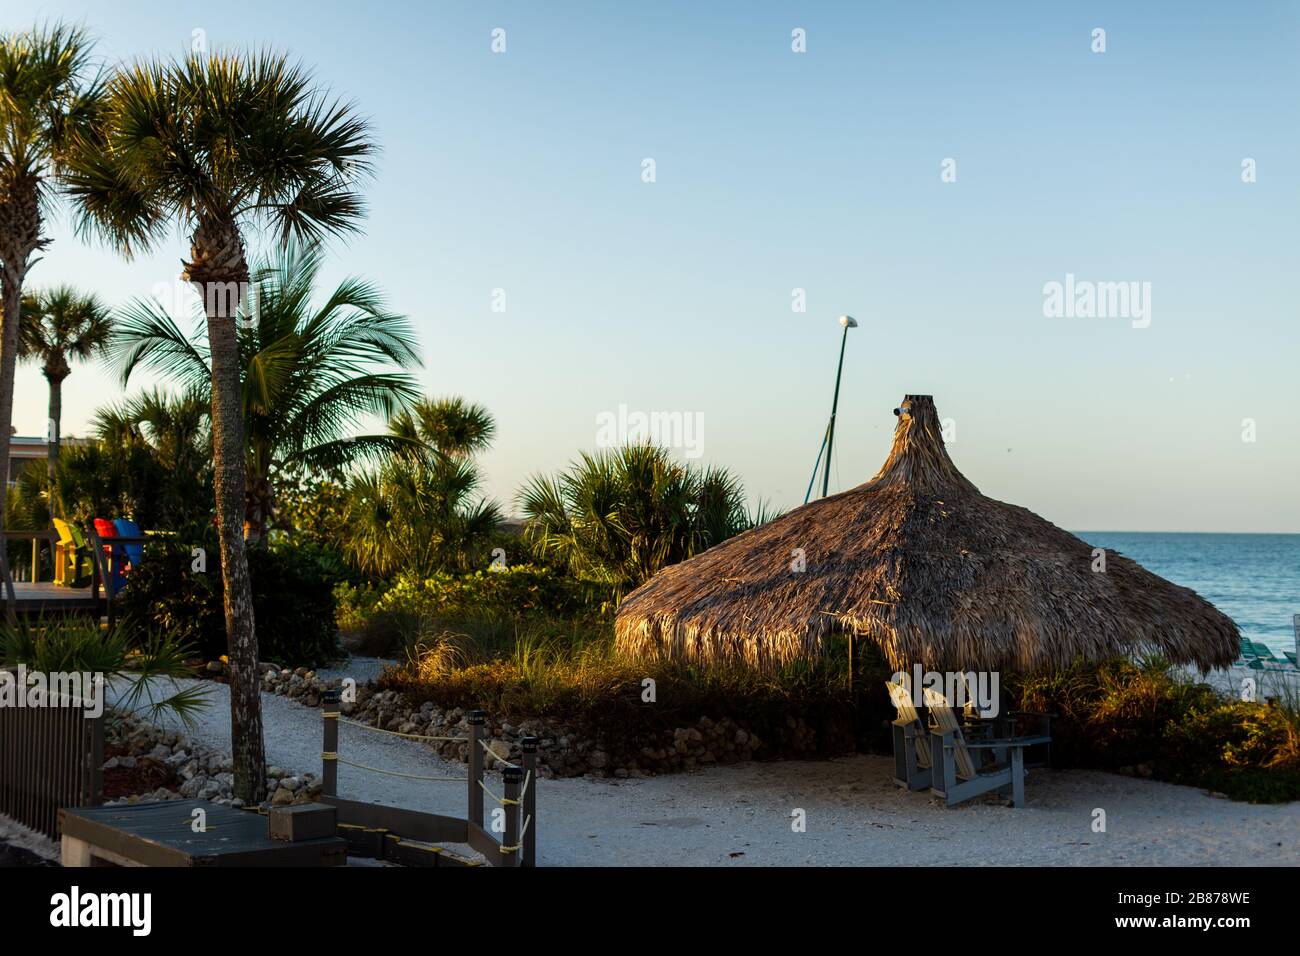 Lido Beach, Floride, États-Unis - 20 mars 2020. Les huttes de palmier sont baignées de lumière tôt le matin lorsque le soleil se lève sur le golfe du Mexique. Banque D'Images